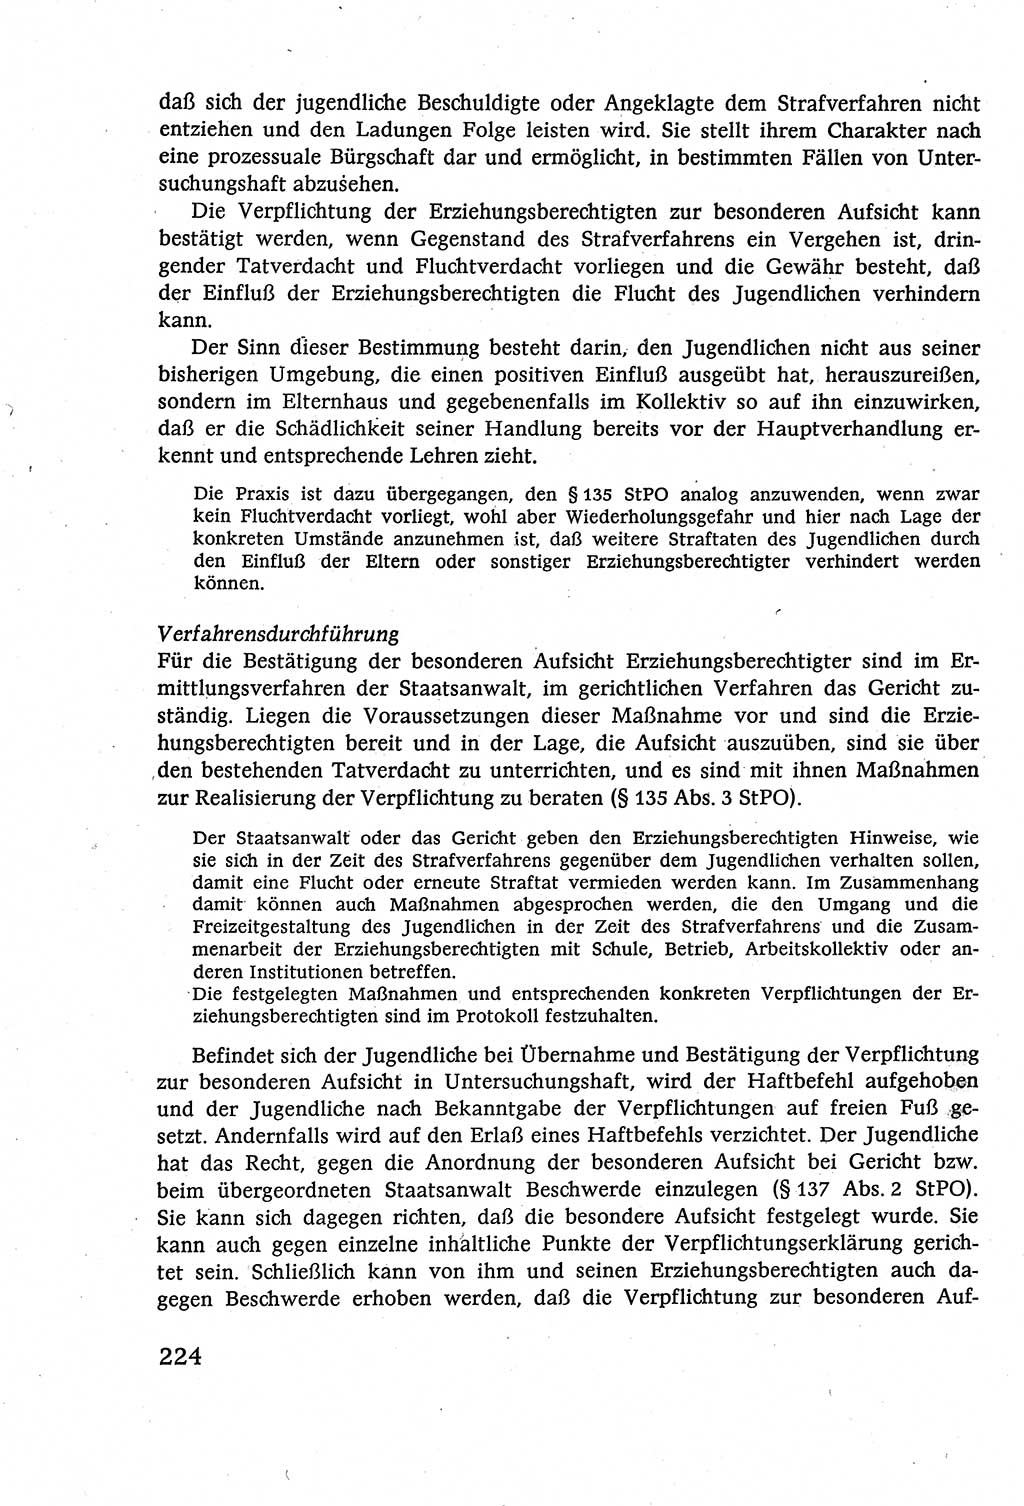 Strafverfahrensrecht [Deutsche Demokratische Republik (DDR)], Lehrbuch 1977, Seite 224 (Strafverf.-R. DDR Lb. 1977, S. 224)